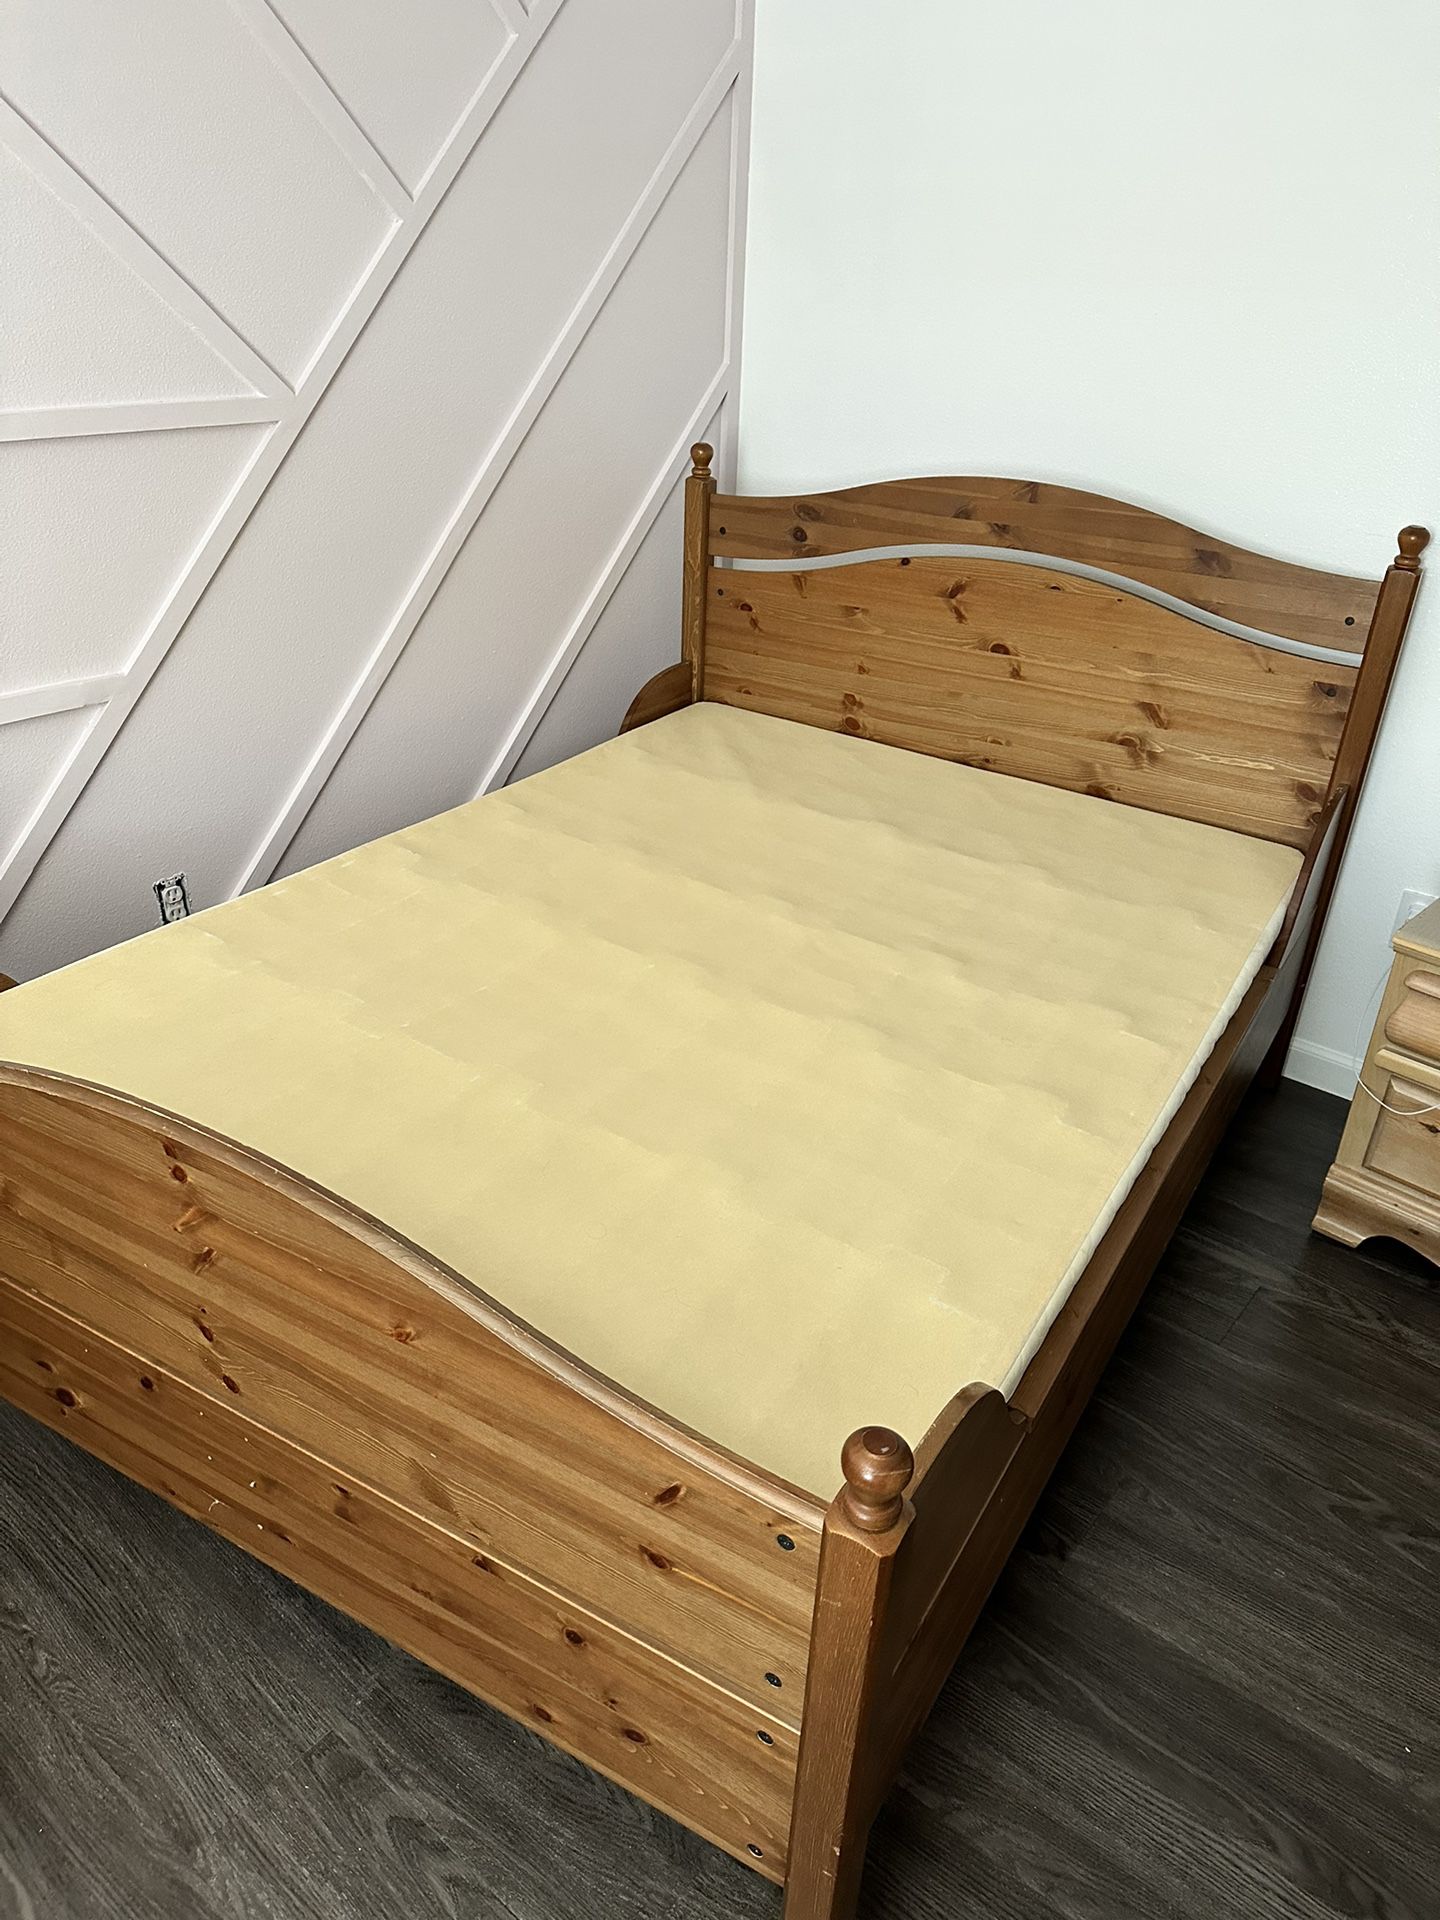 Wood Bed Set